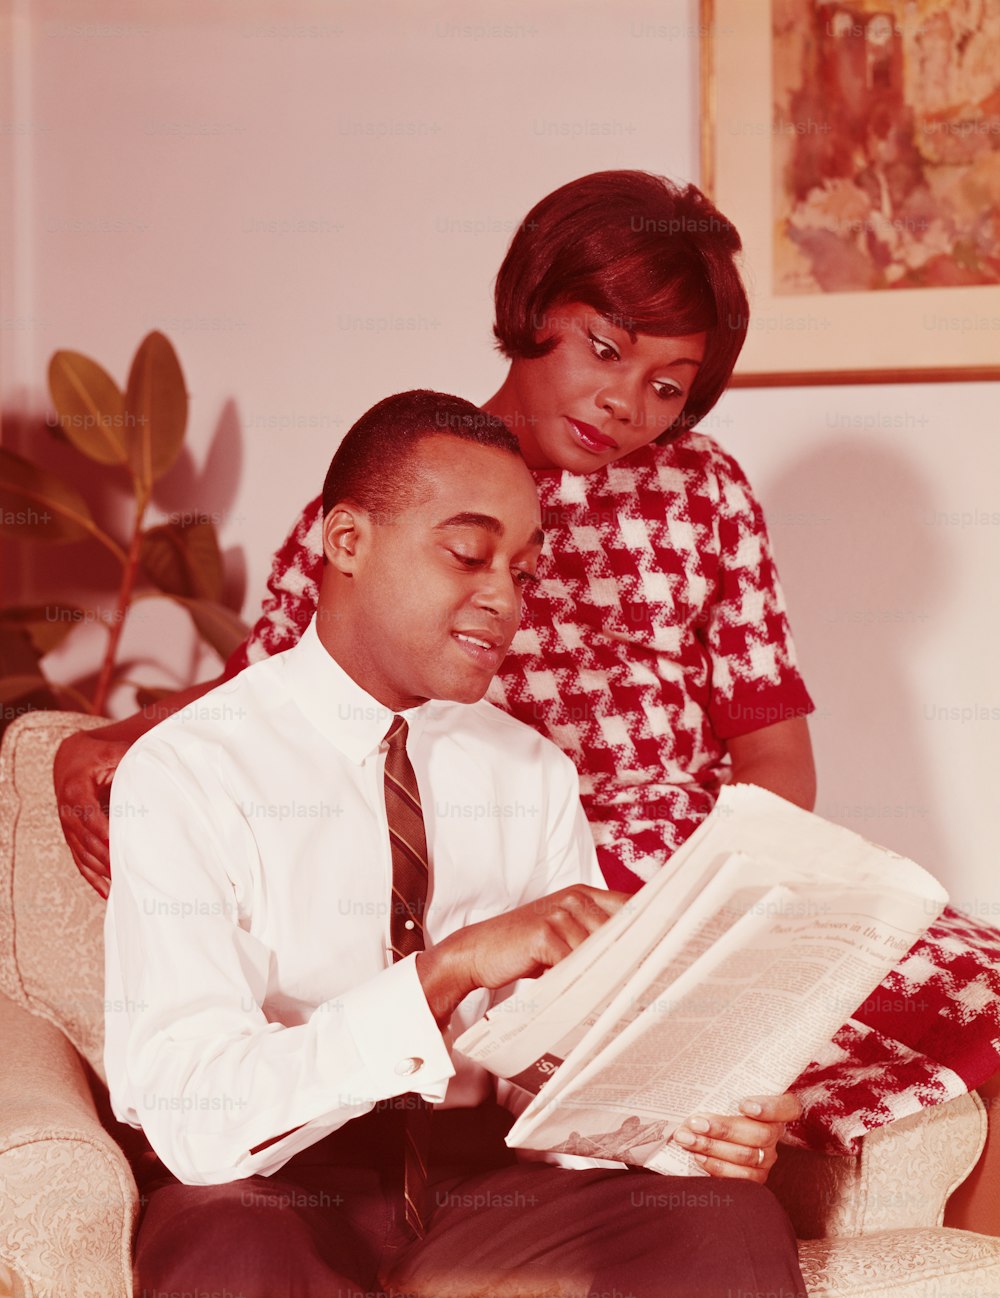 アメリカ合衆国 - 1960年代頃:椅子に座っているカップル、新聞を読む男性、椅子の肘掛けに腰掛けた女性、男性の肩越しに見ている女性。